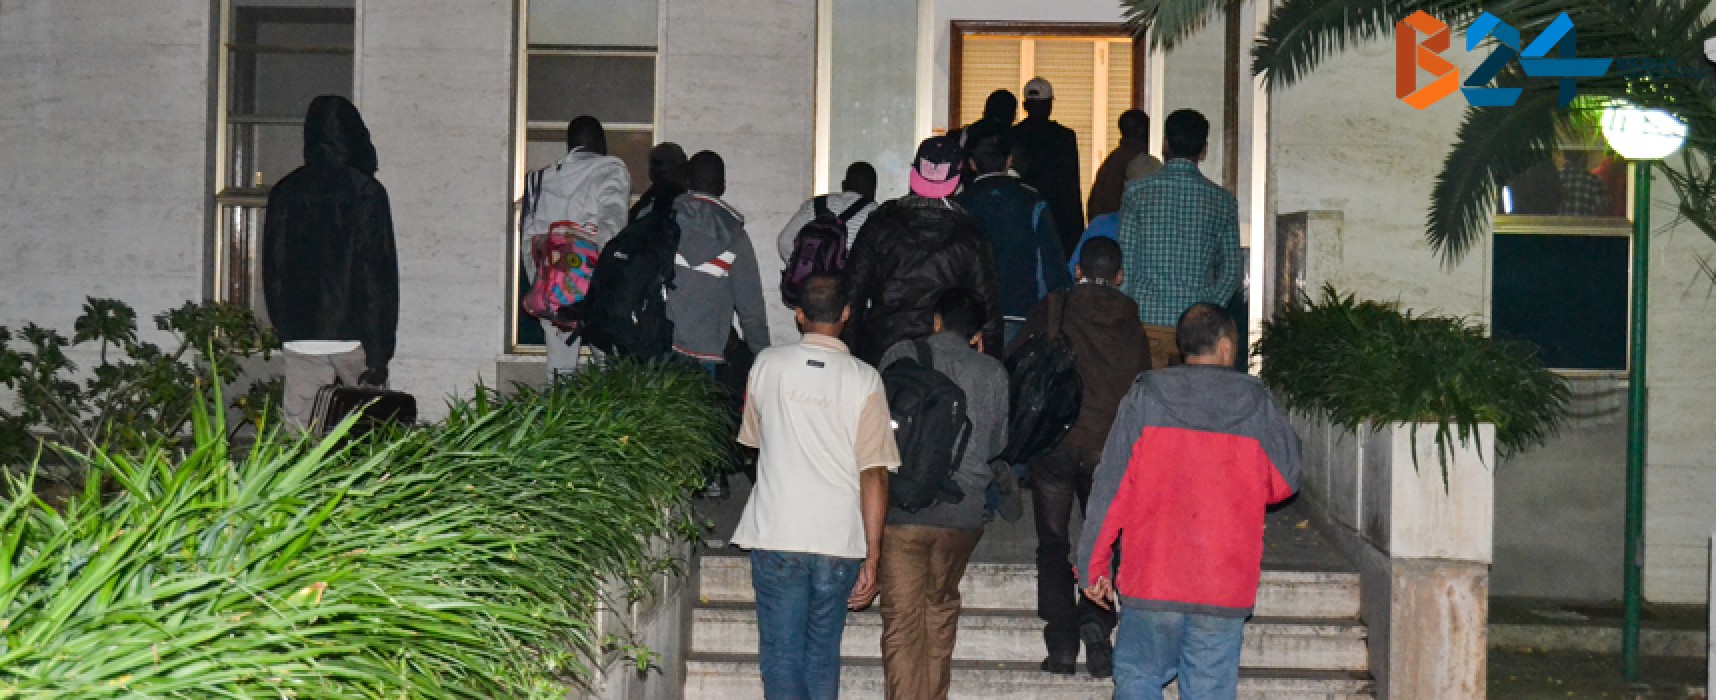 Ventotto profughi arrivati la scorsa notte a Villa San Giuseppe / FOTO